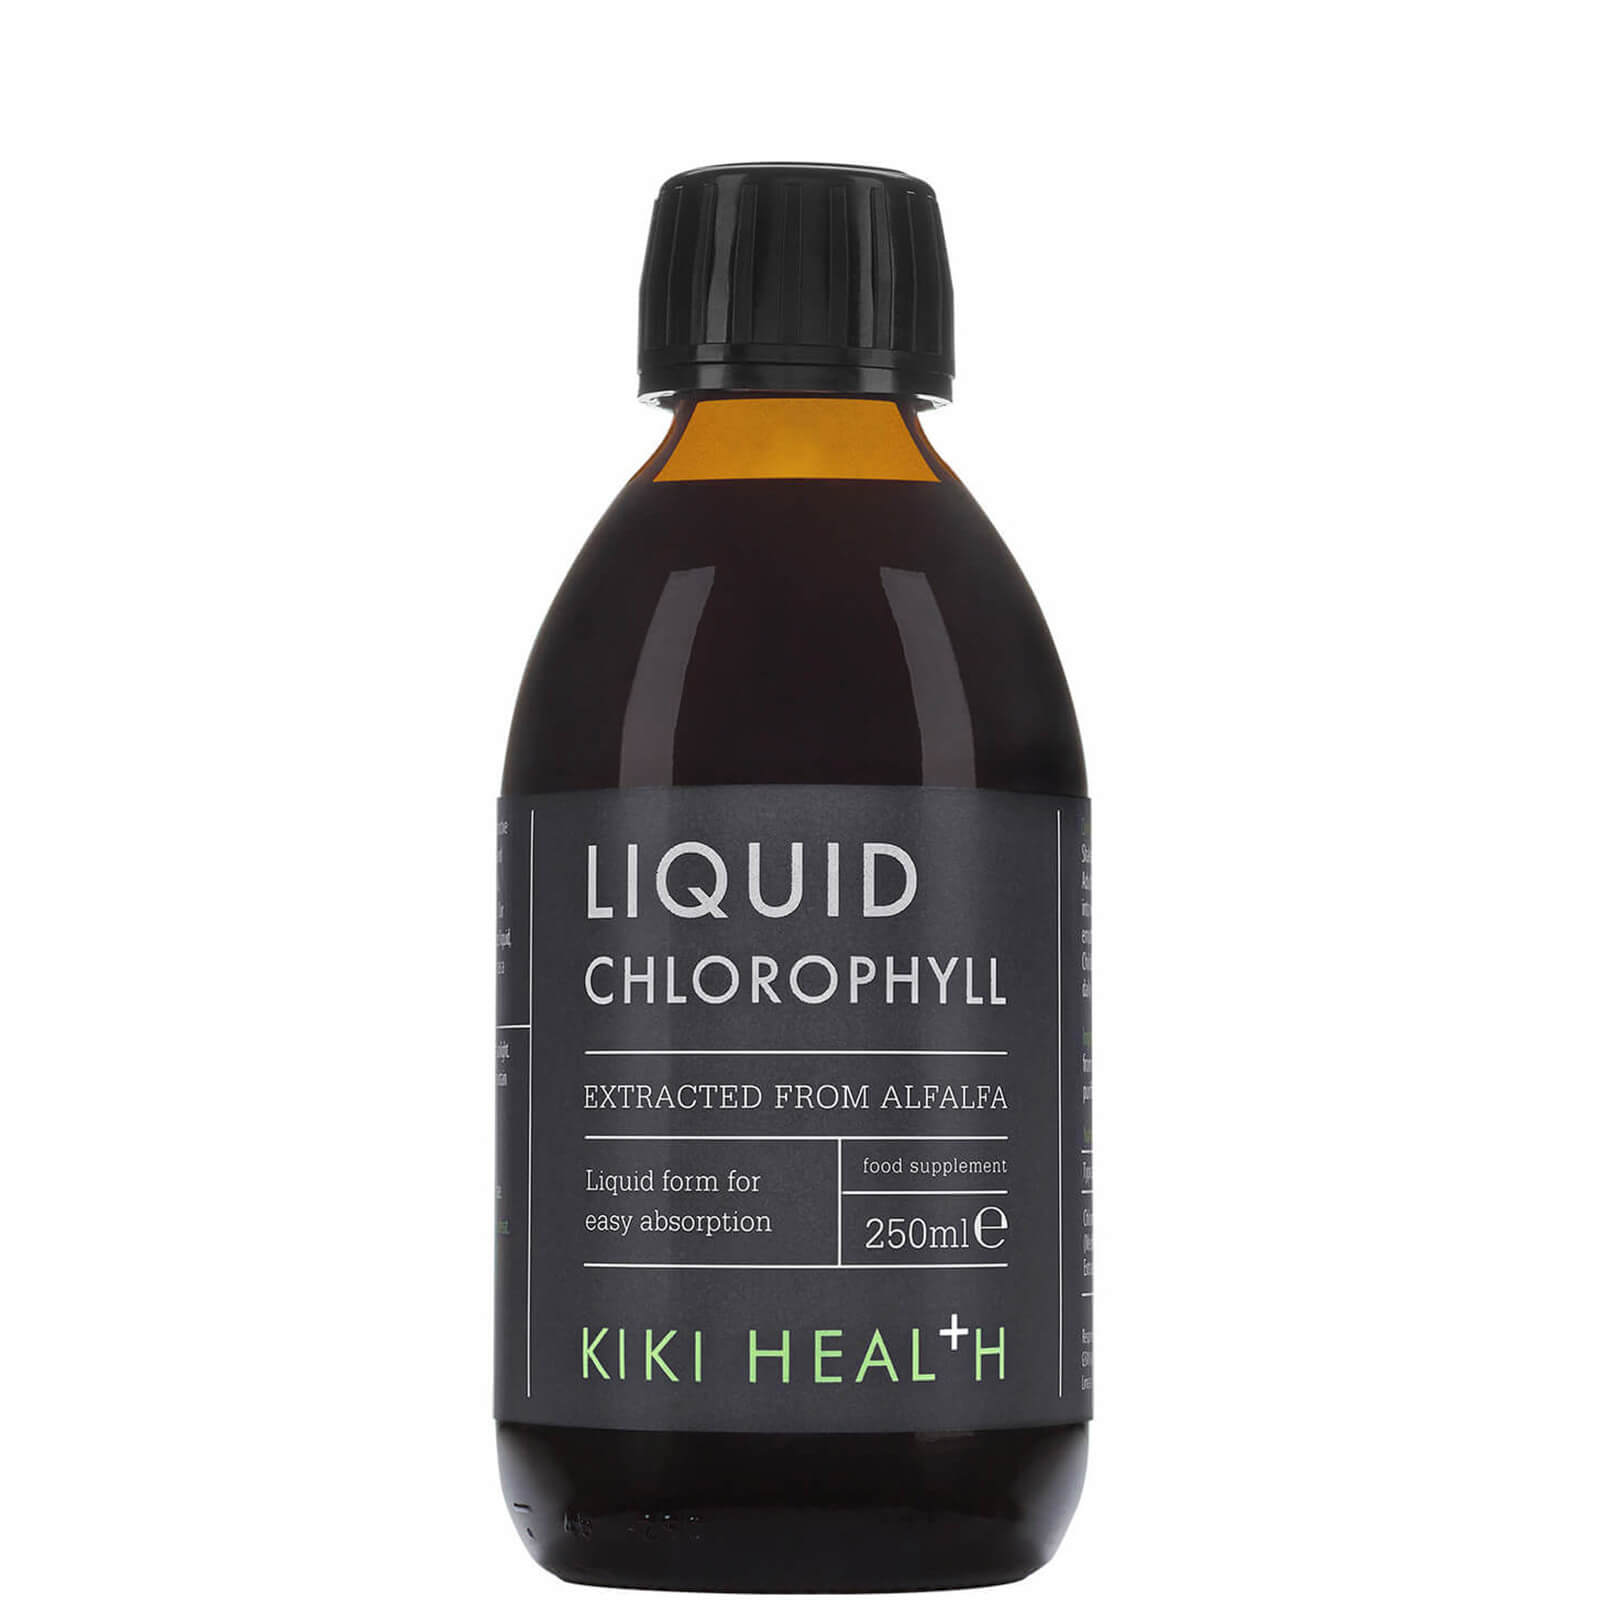 KIKI Health Liquid Chlorophyll 250ml lookfantastic.com imagine